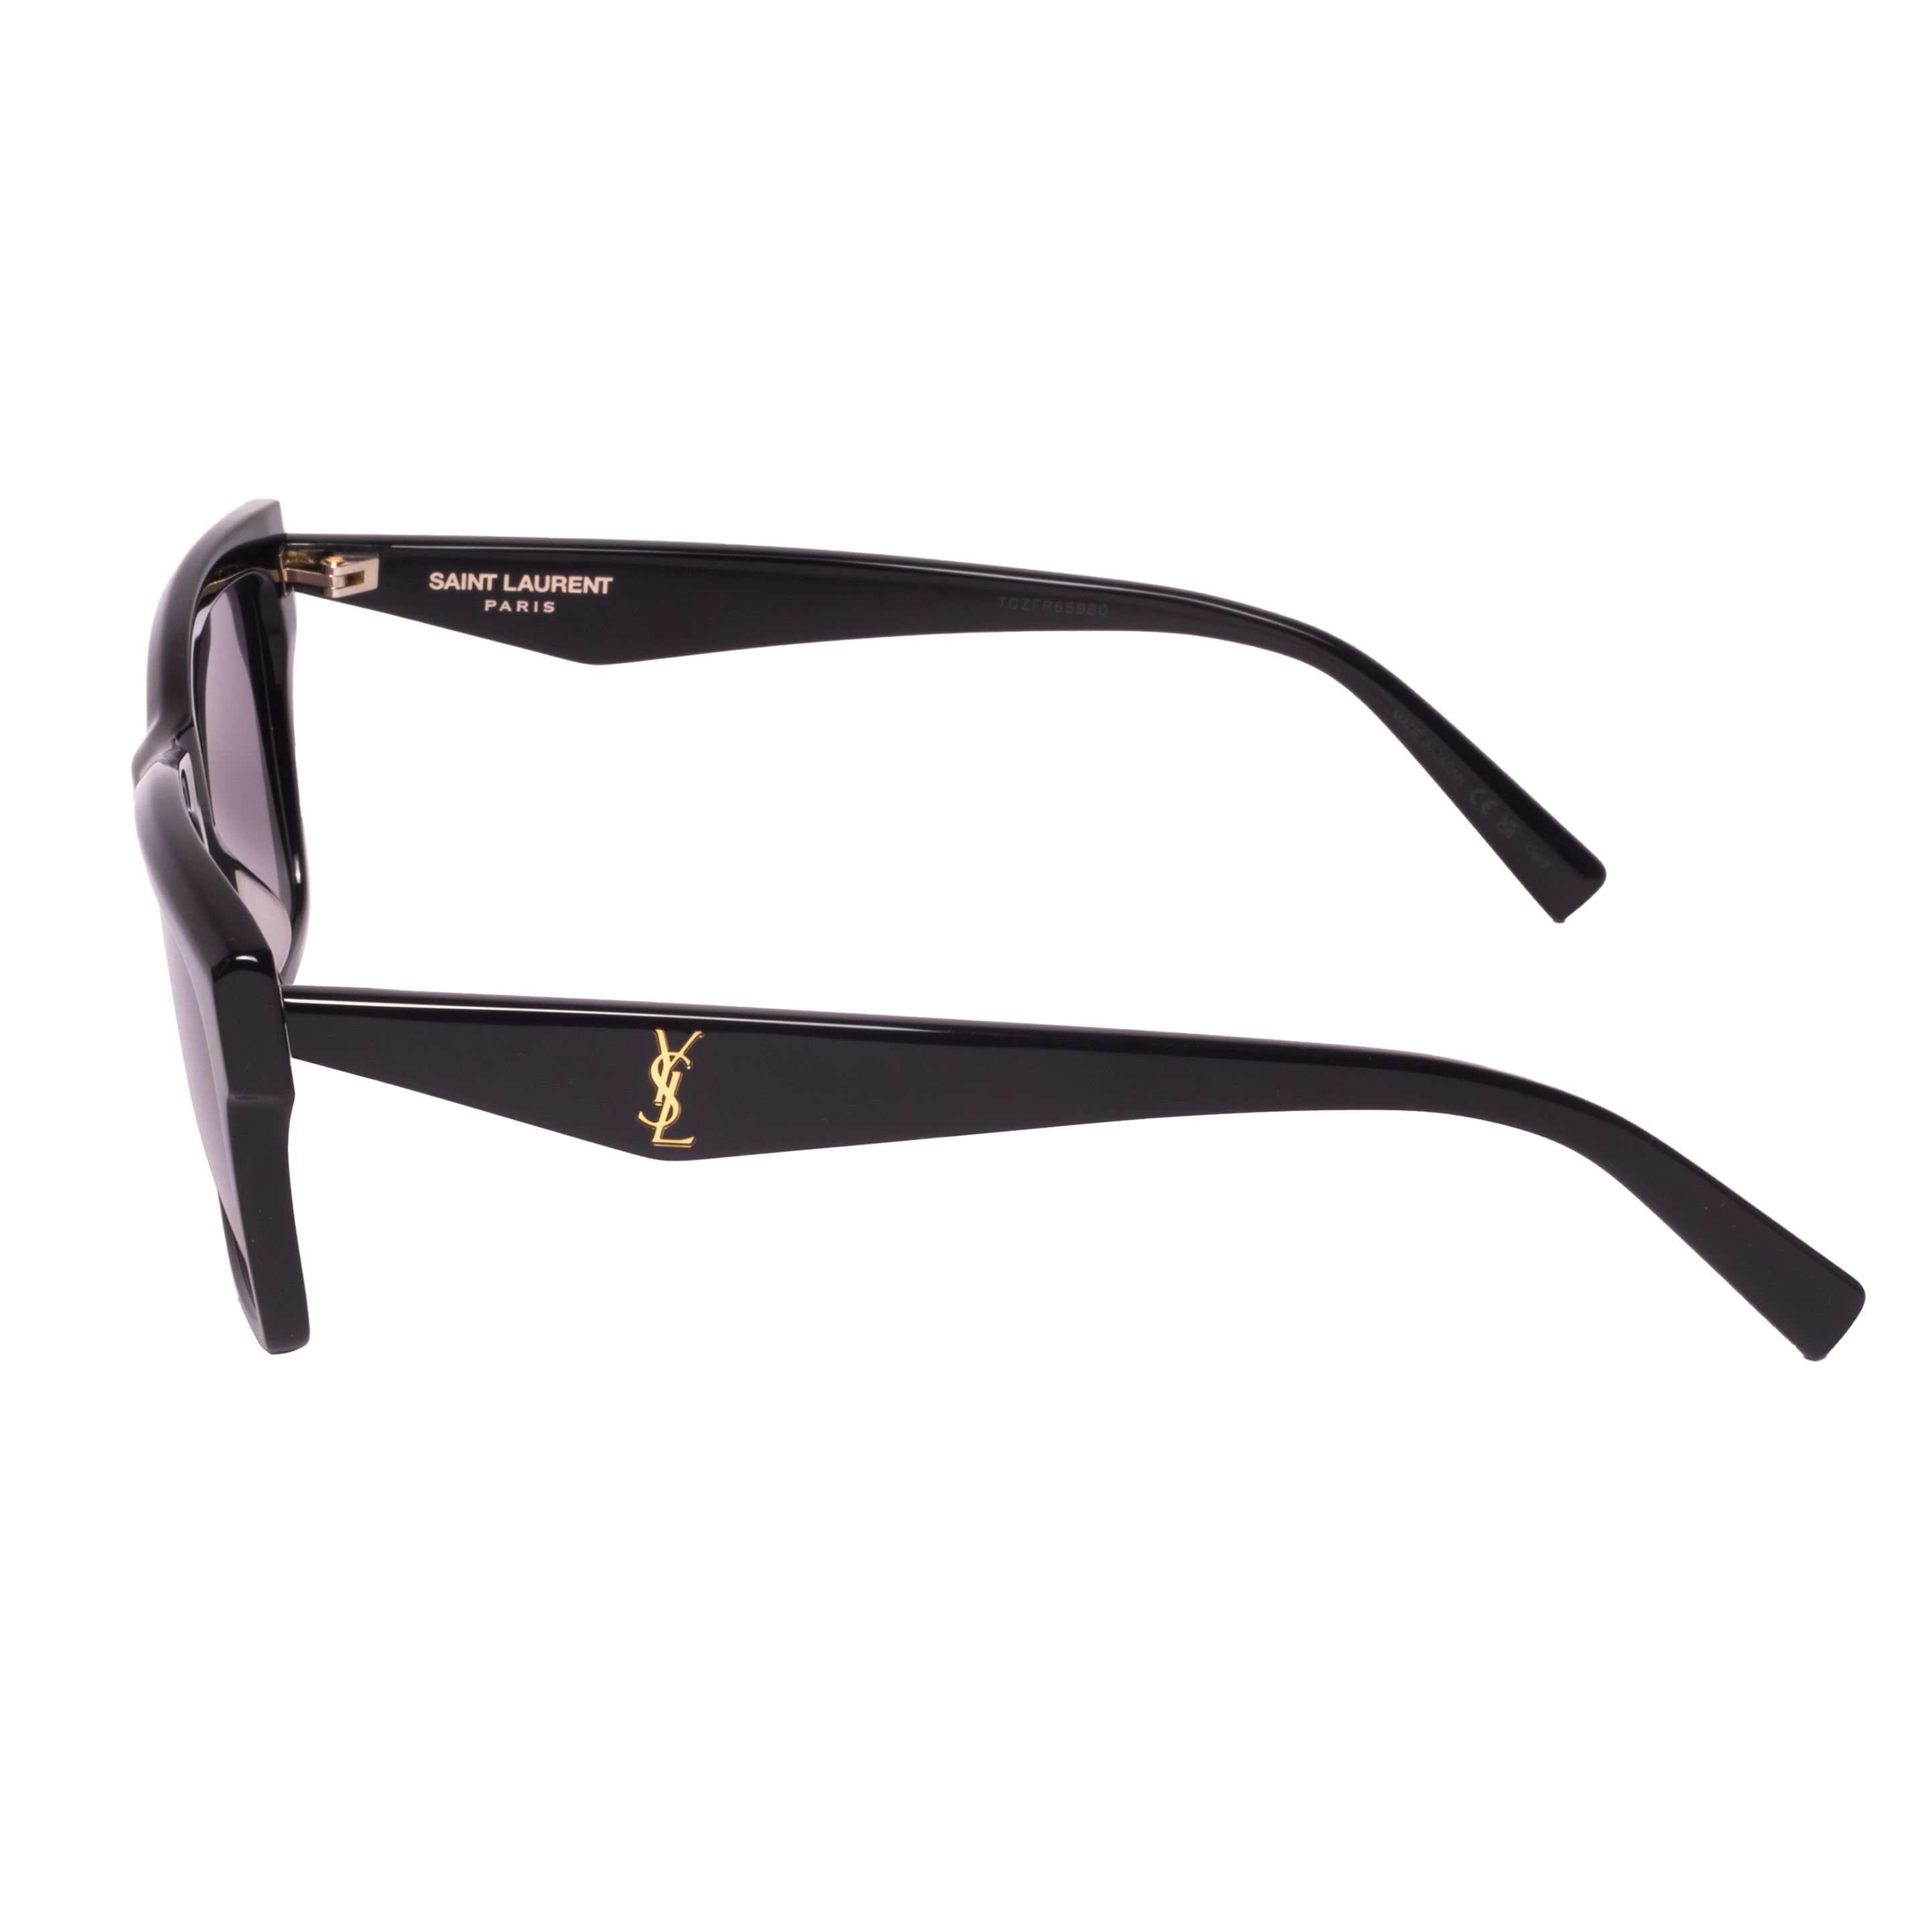 Saint Laurent-SL M104-56-001 Sunglasses - Premium Sunglasses from Saint Laurent - Just Rs. 24100! Shop now at Laxmi Opticians